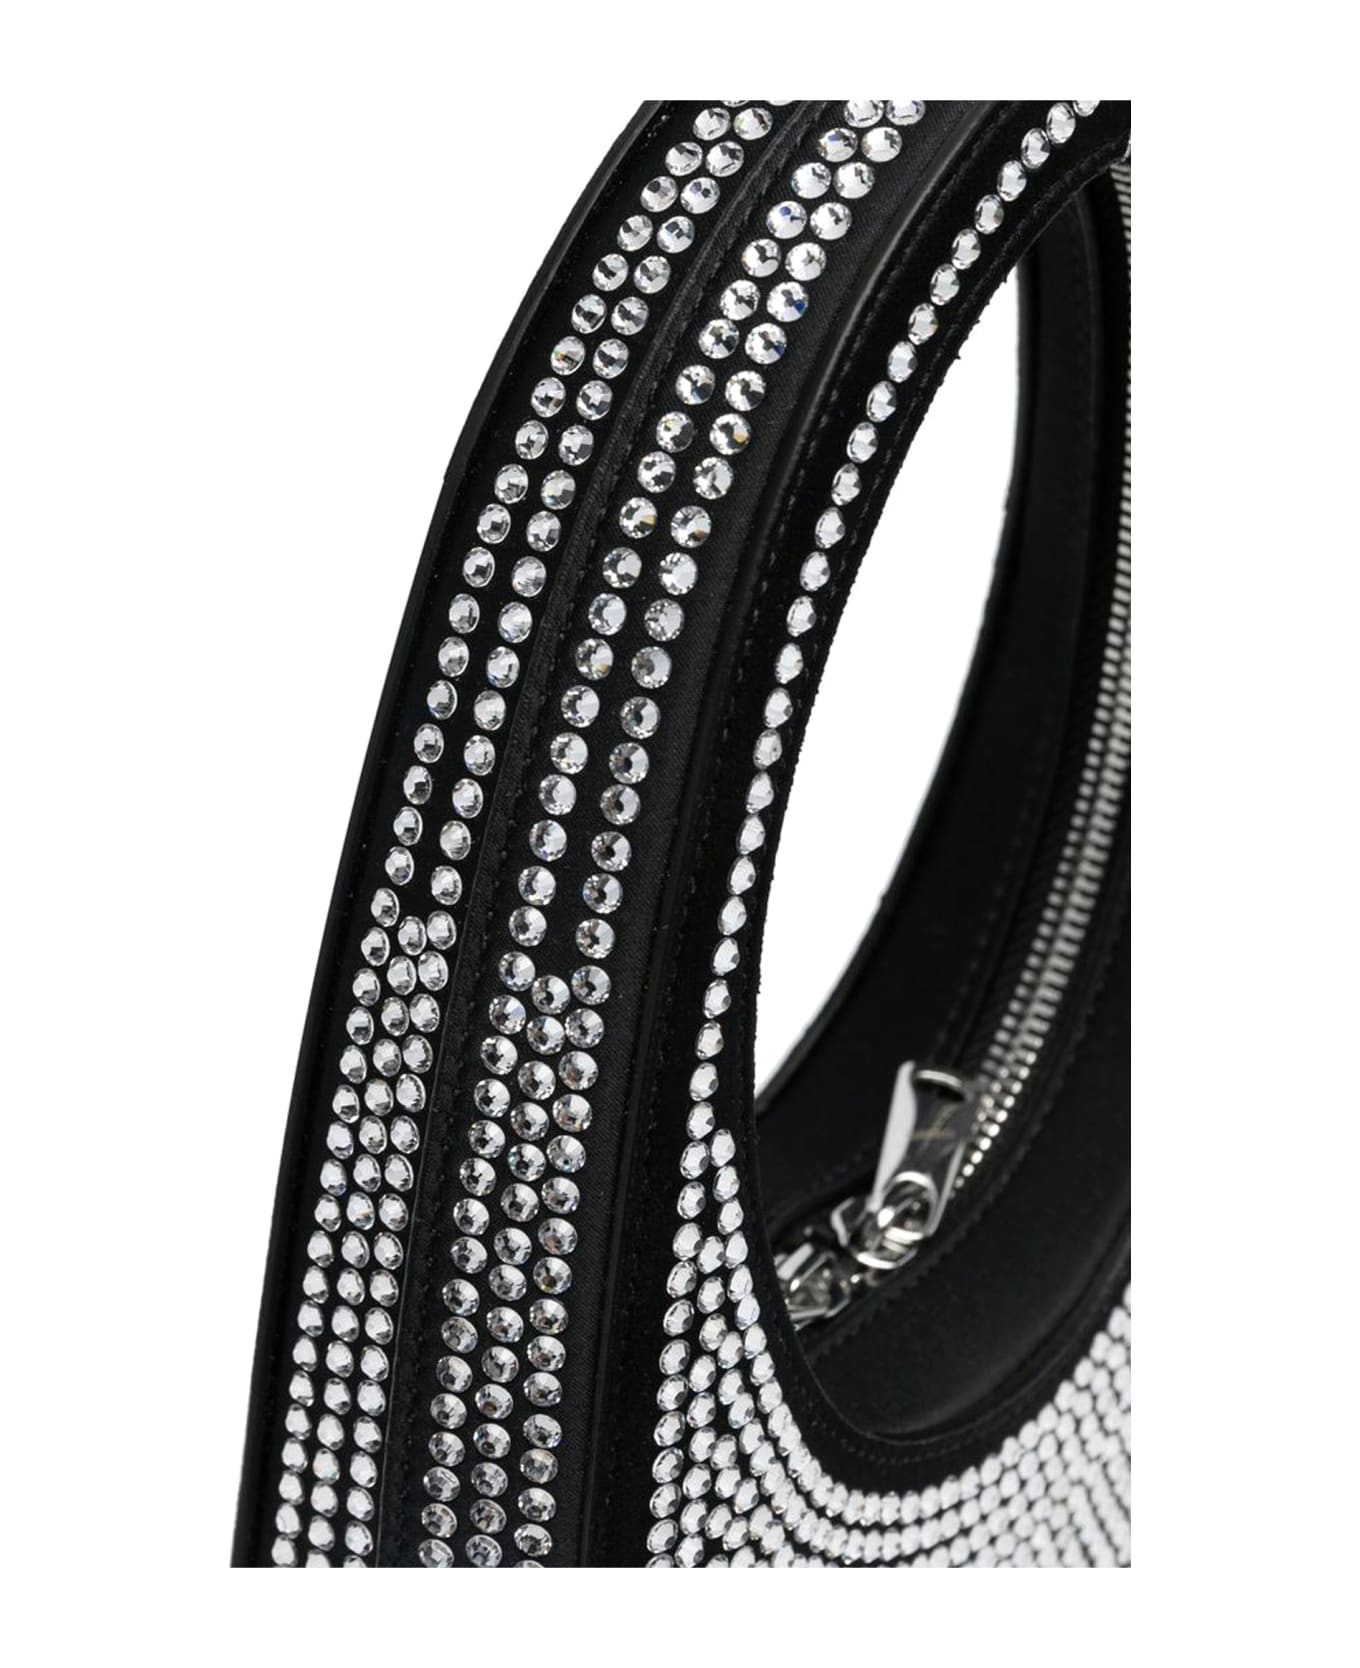 Coperni Swipe Embellished Tote Bag - Bkcs Black Crystal